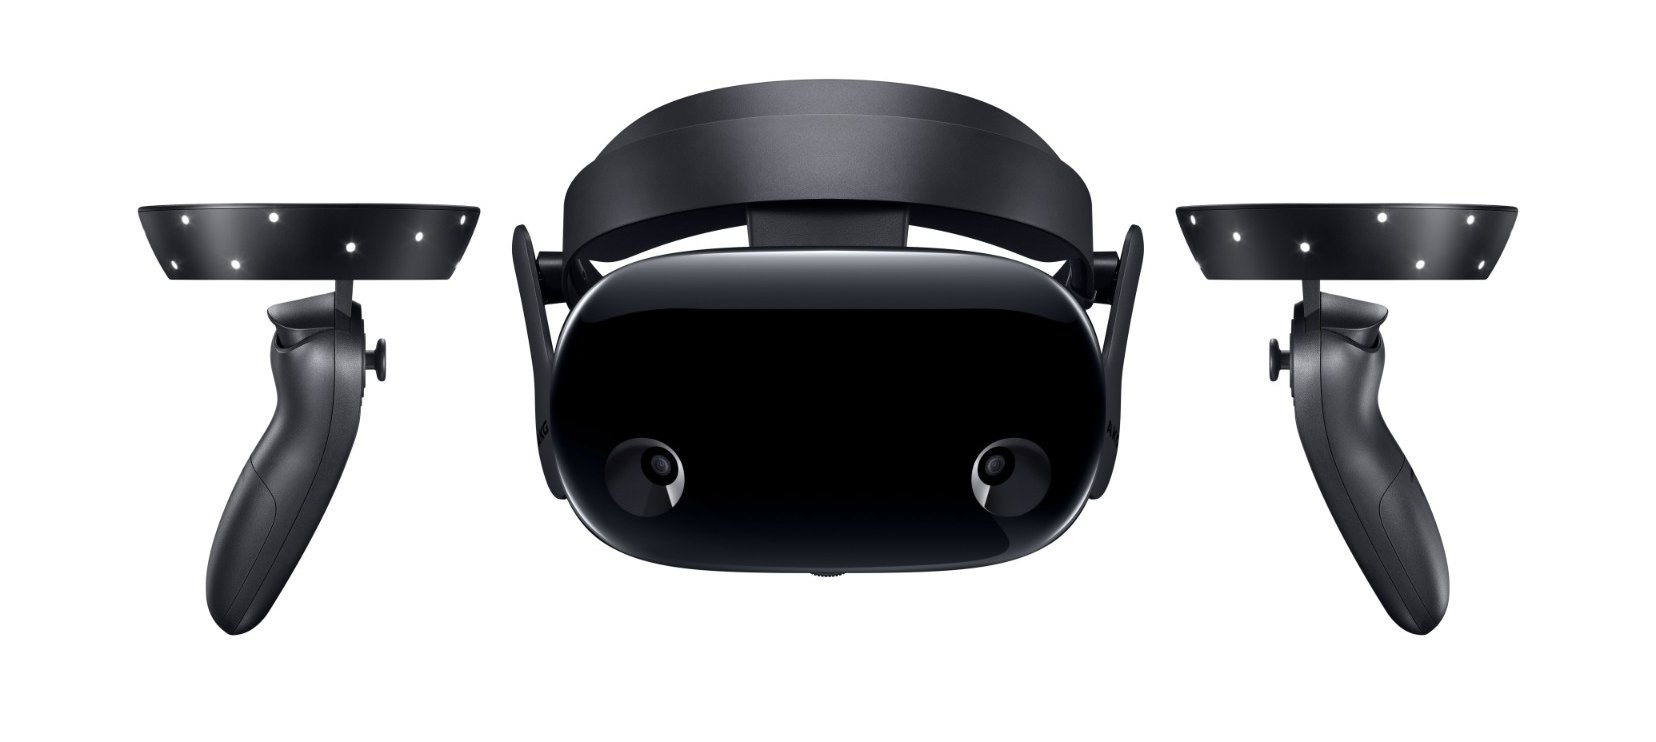 Samsung HMD Odyssey+, czyli nowe gogle VR